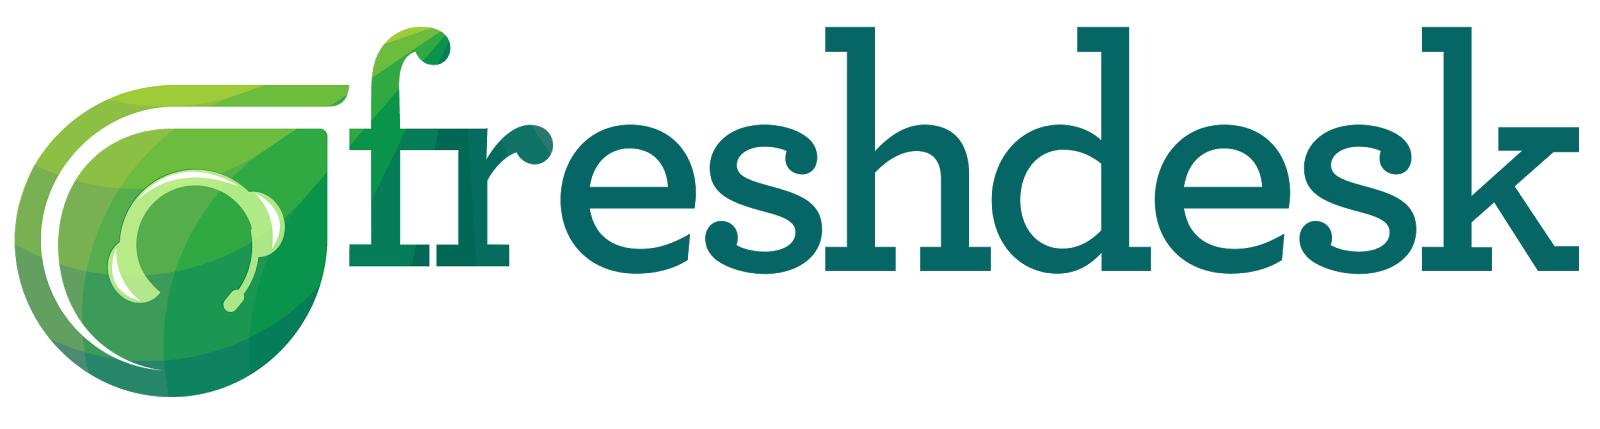 logo-freshdesk